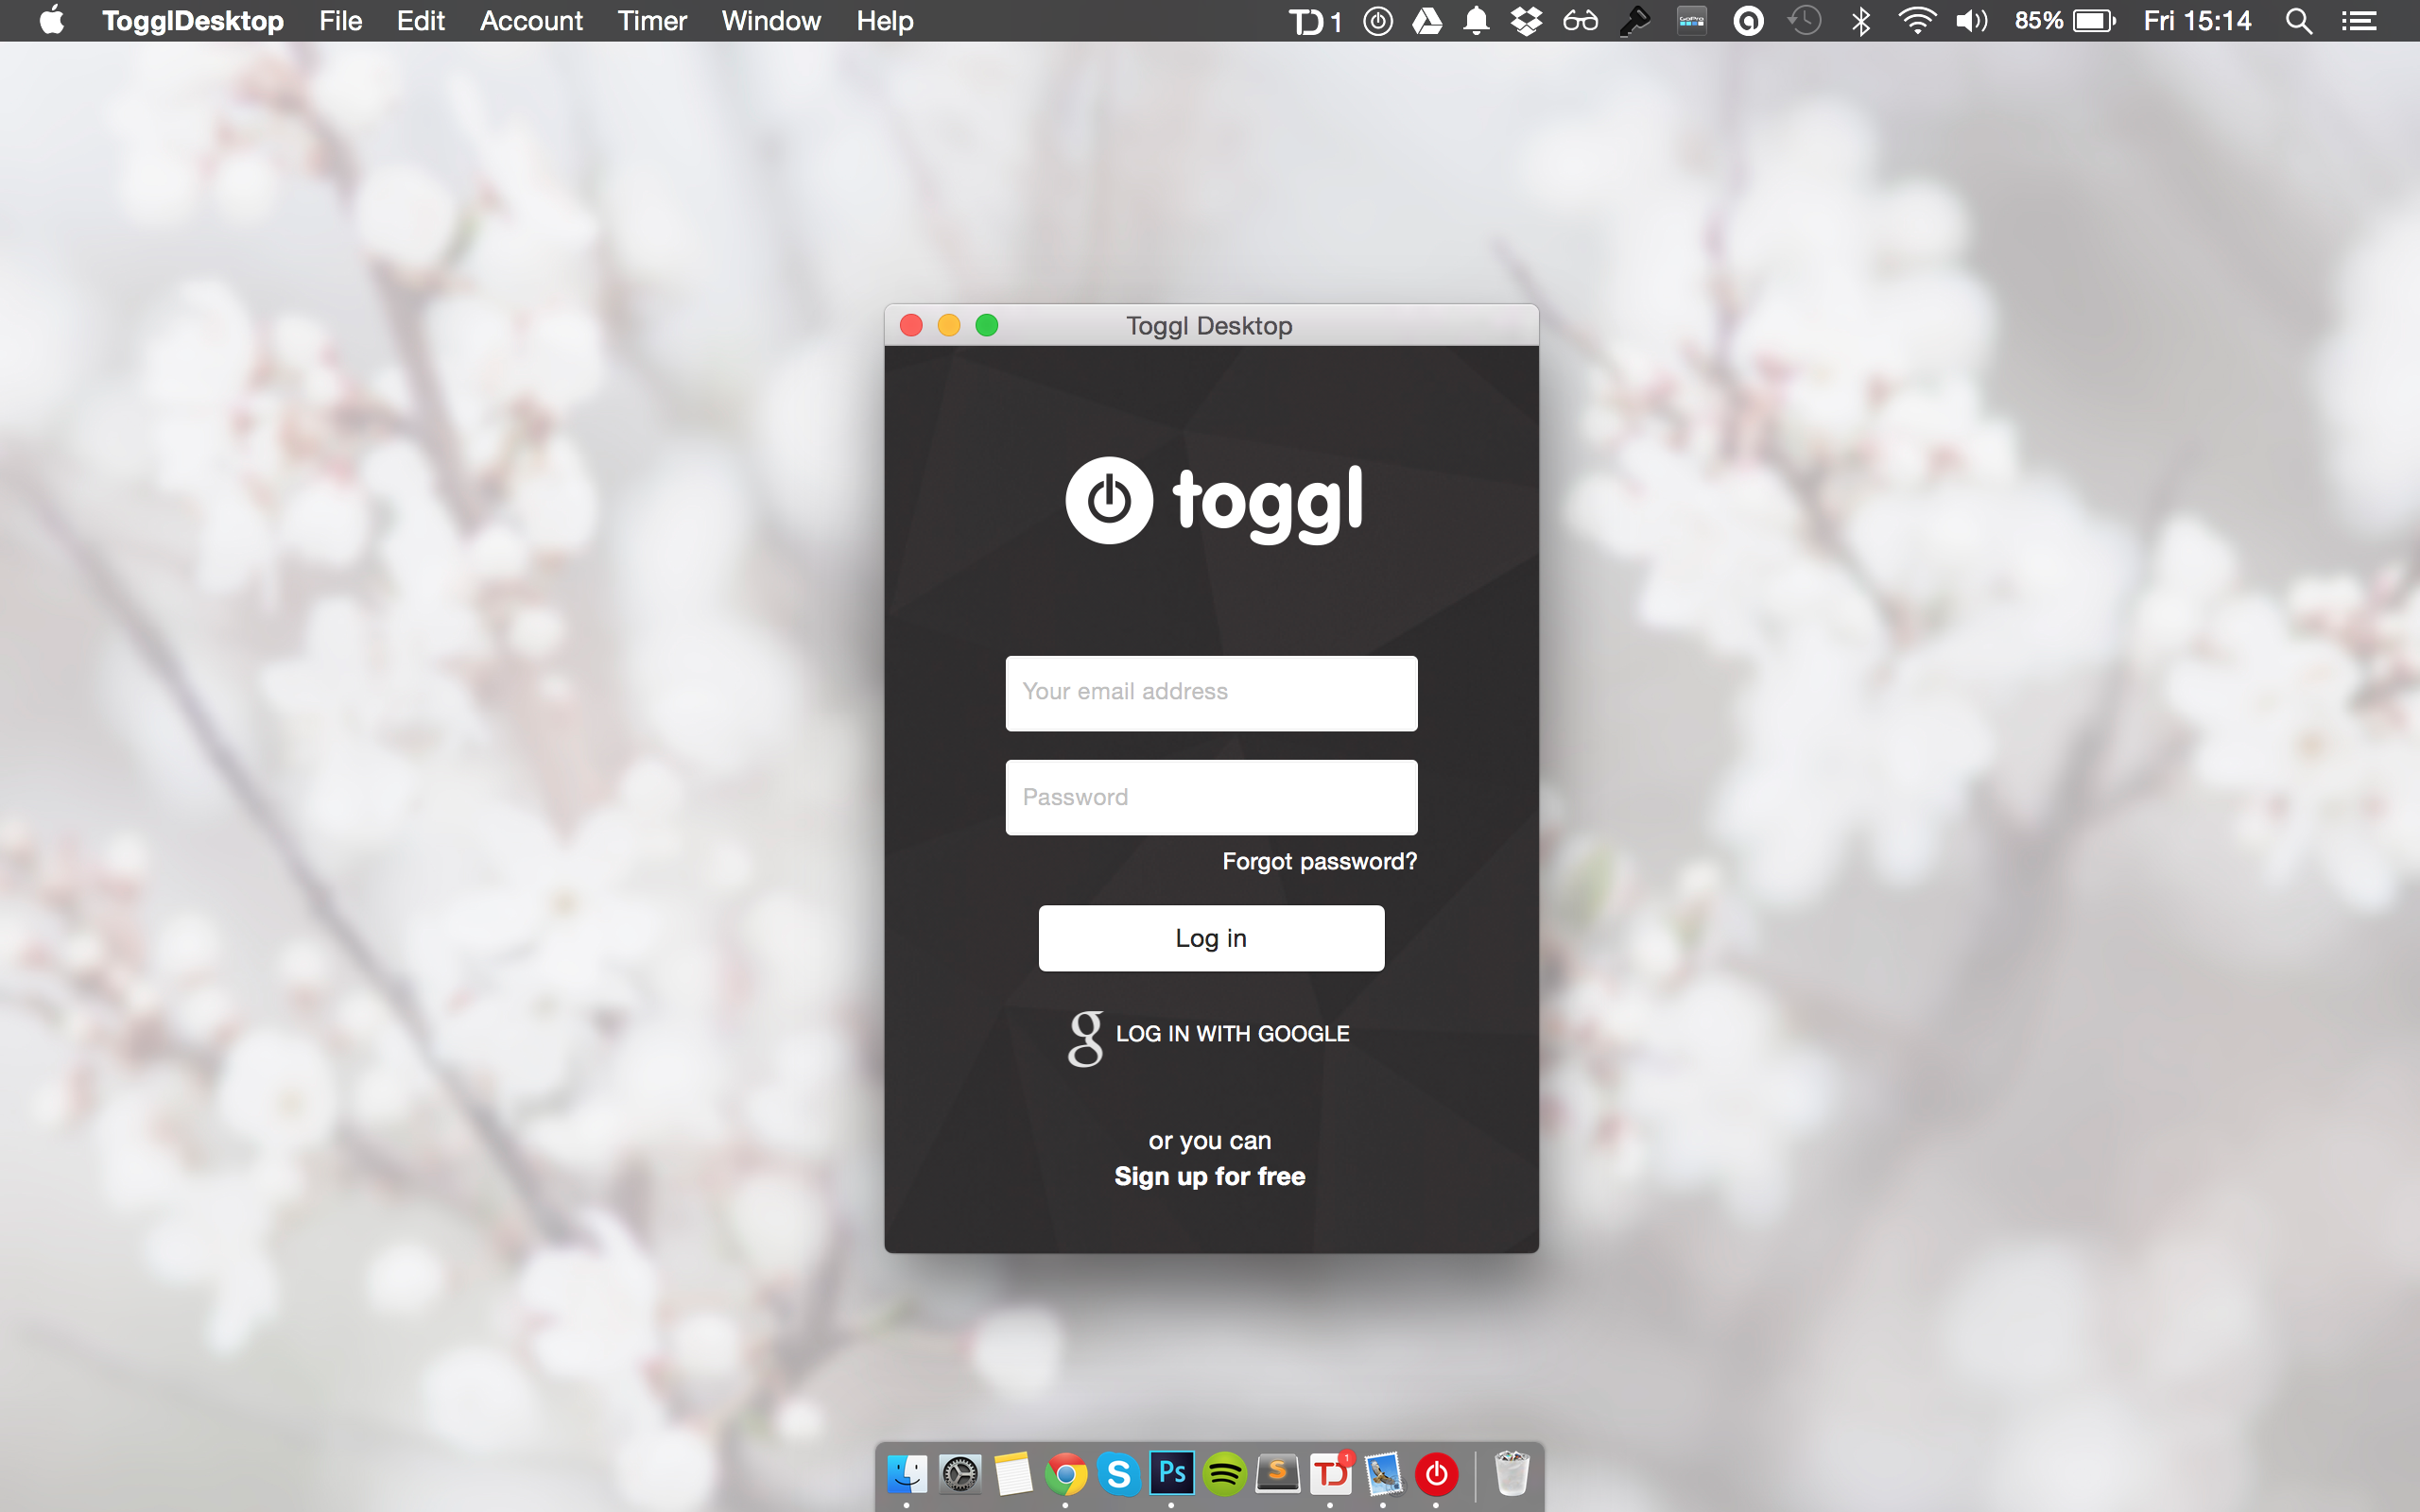 Toggl Track Software - Toggl desktop app